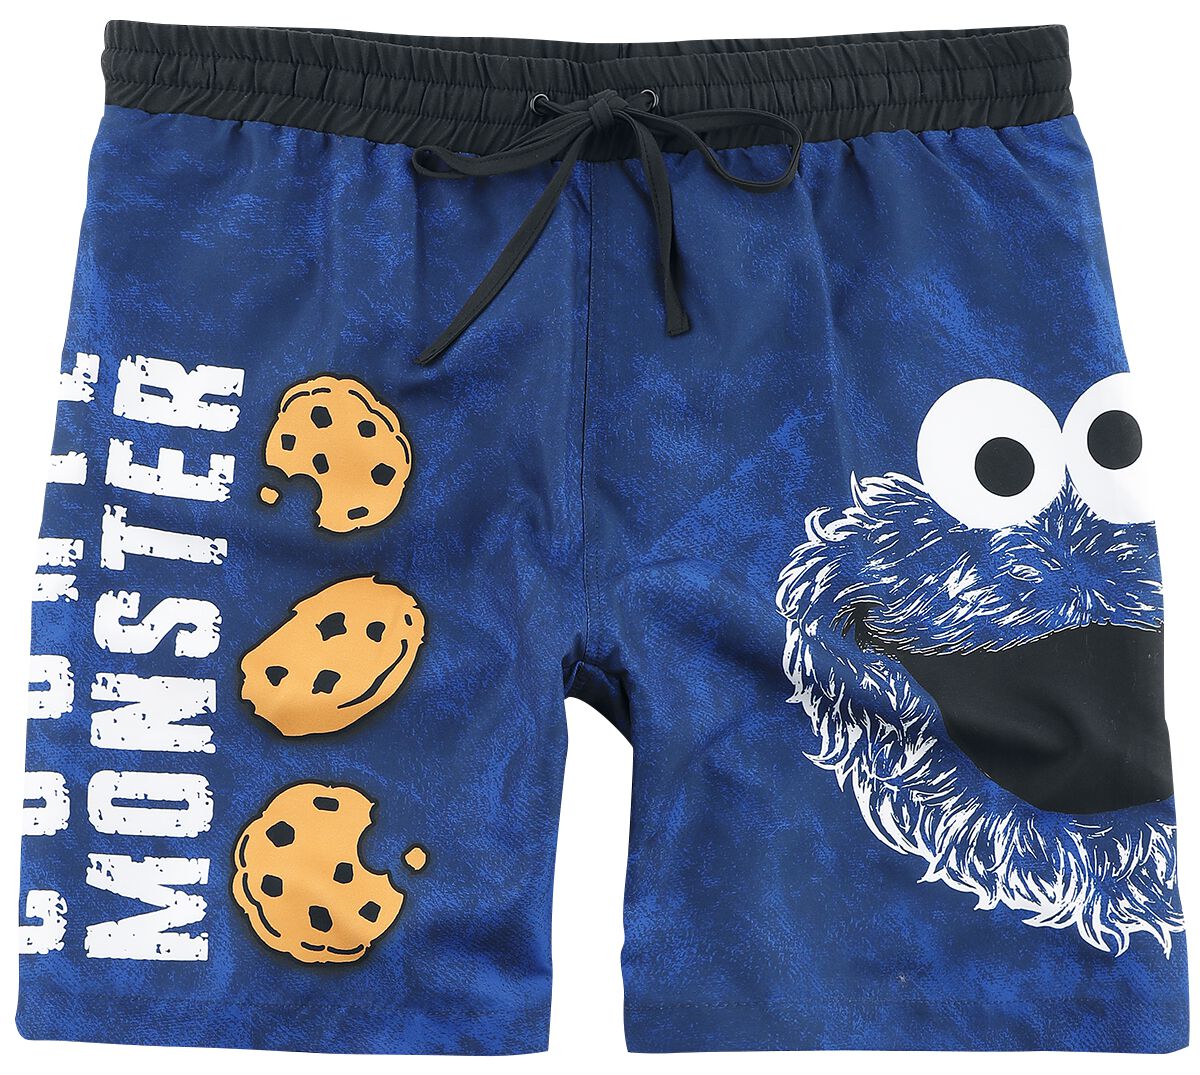 Sesamstraße Badeshort - Cookie Monster - Face - M bis 3XL - für Männer - Größe XL - blau  - EMP exklusives Merchandise!